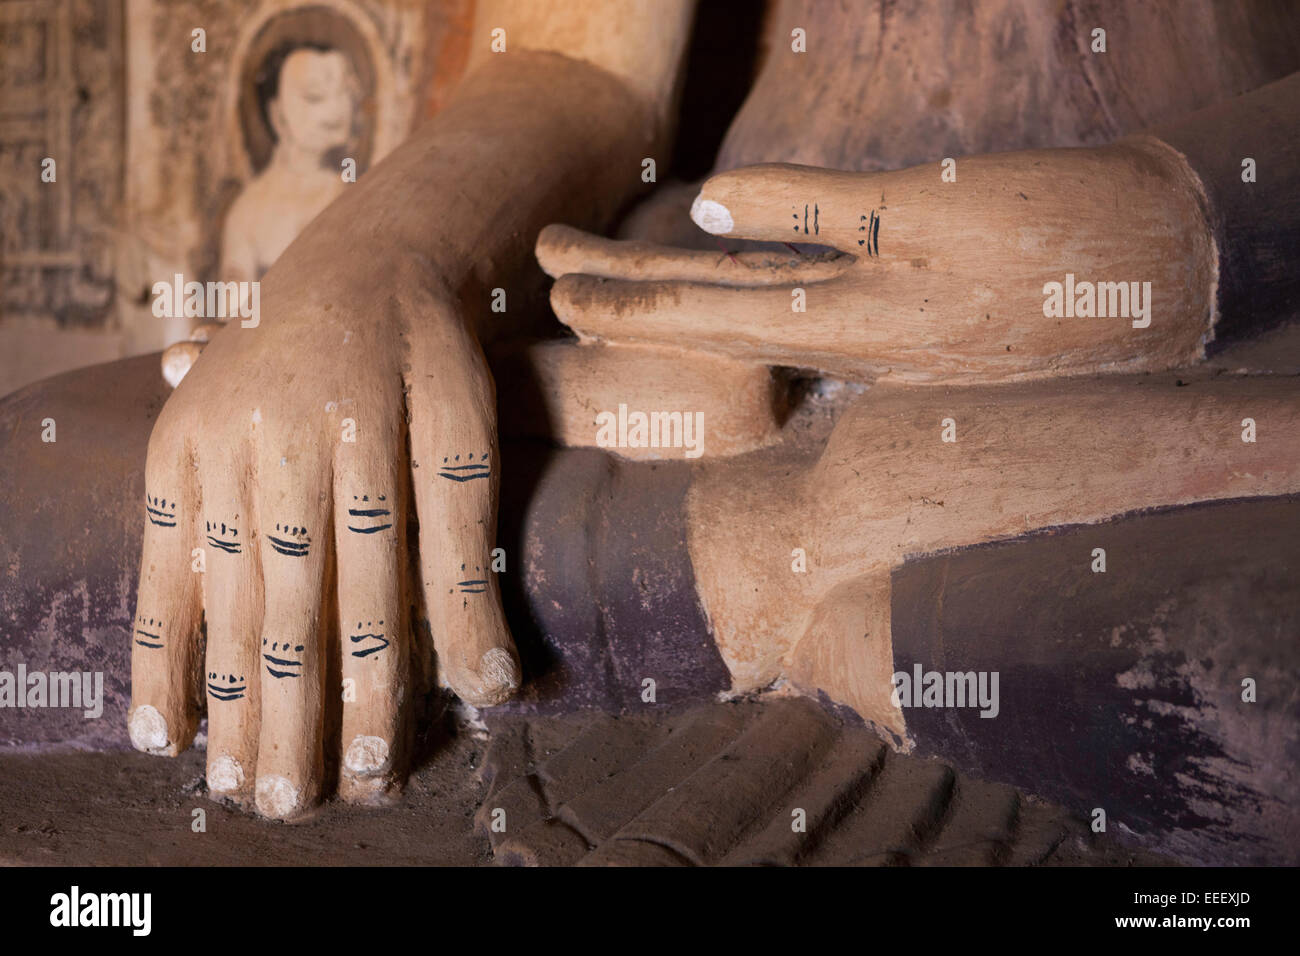 Détail de la statue de Bouddha, les mains à l'intérieur de Kay Min Gha pagode, Bagan, Myanmar (Birmanie) Banque D'Images